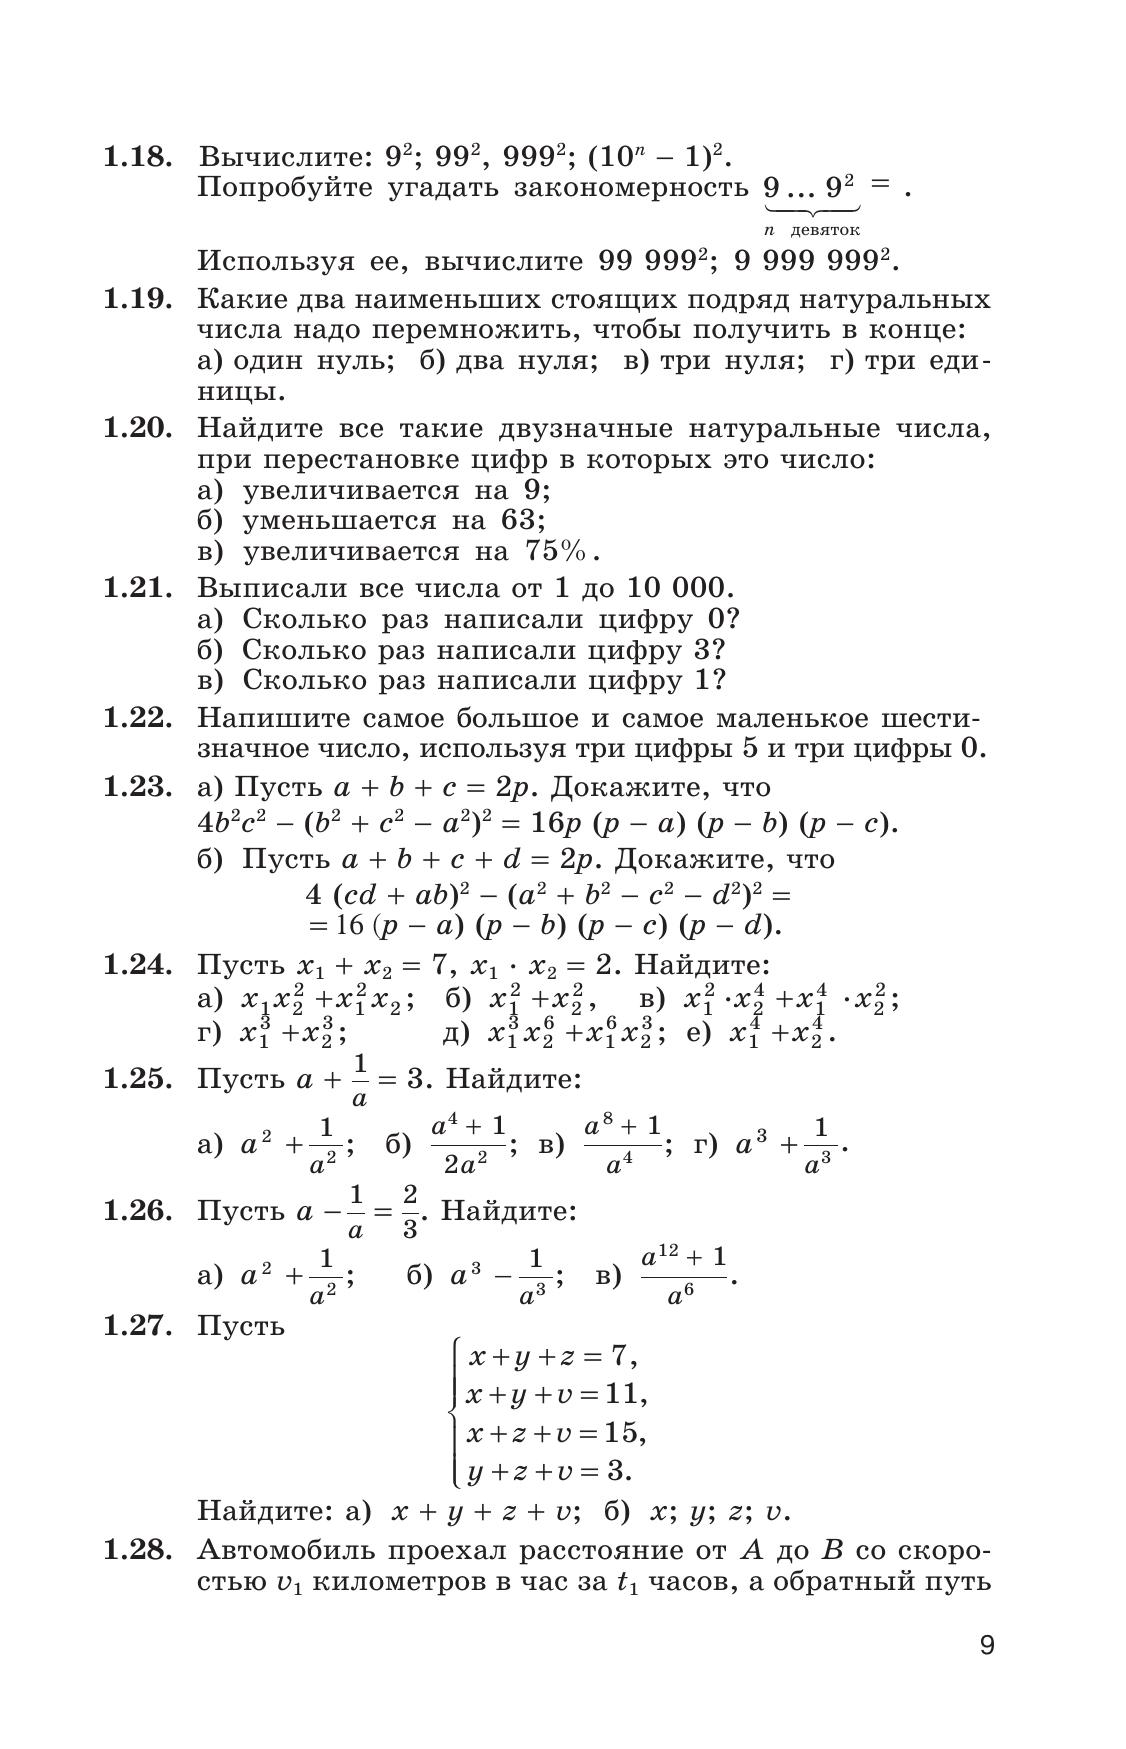 Сборник задач по алгебре. 8-9 классы. 2